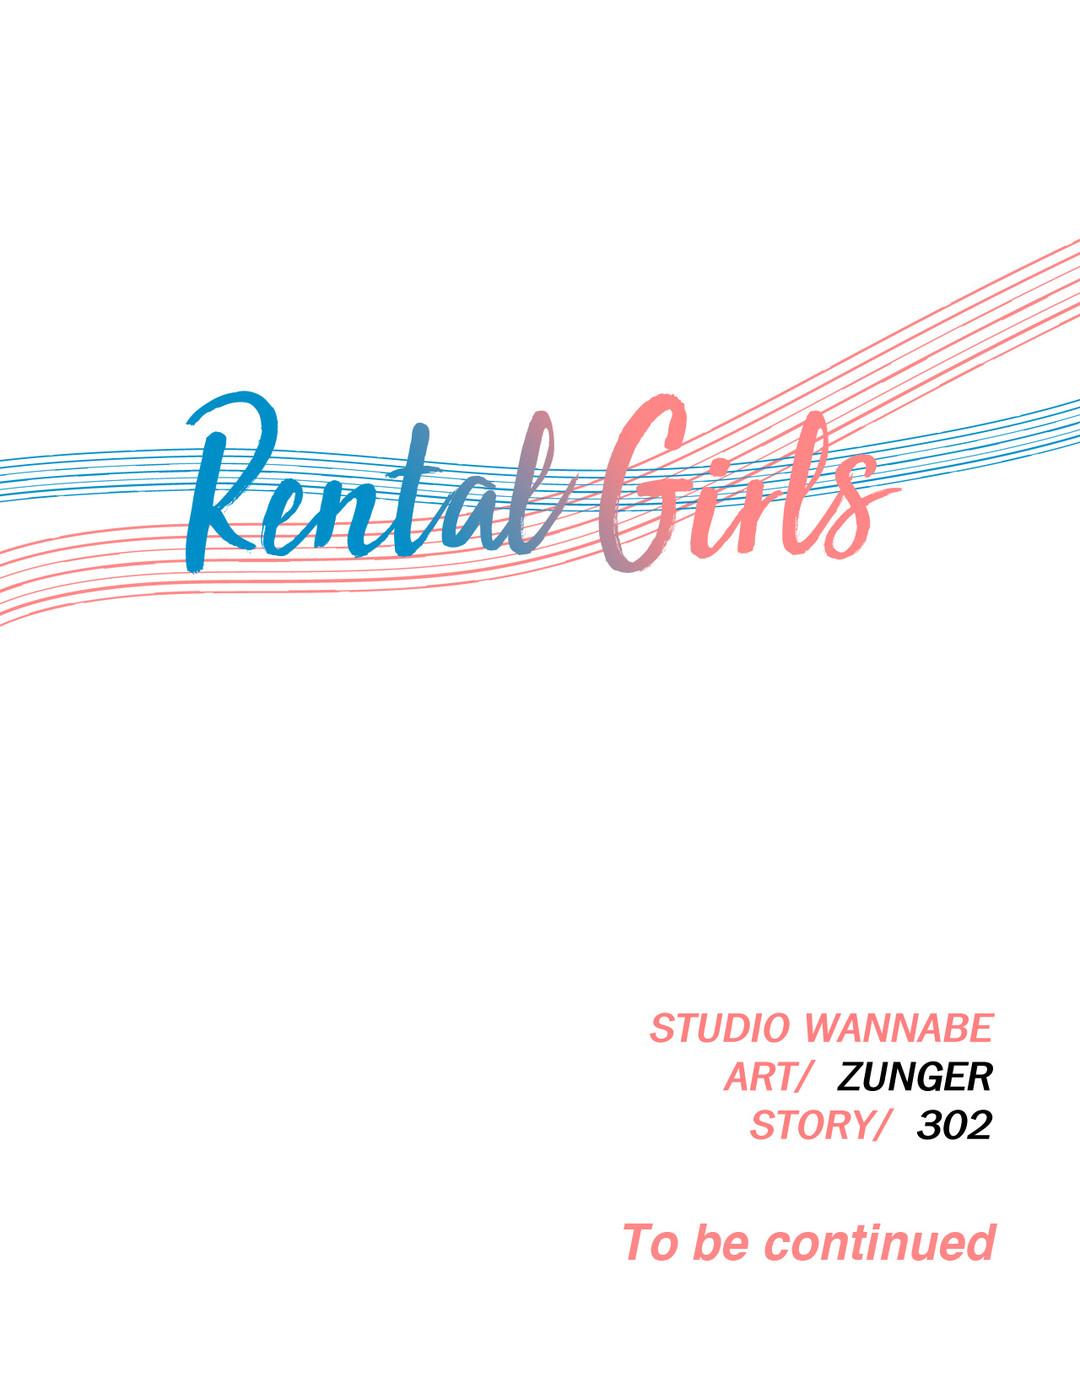 Rental Girls Ch 4 - 9 51